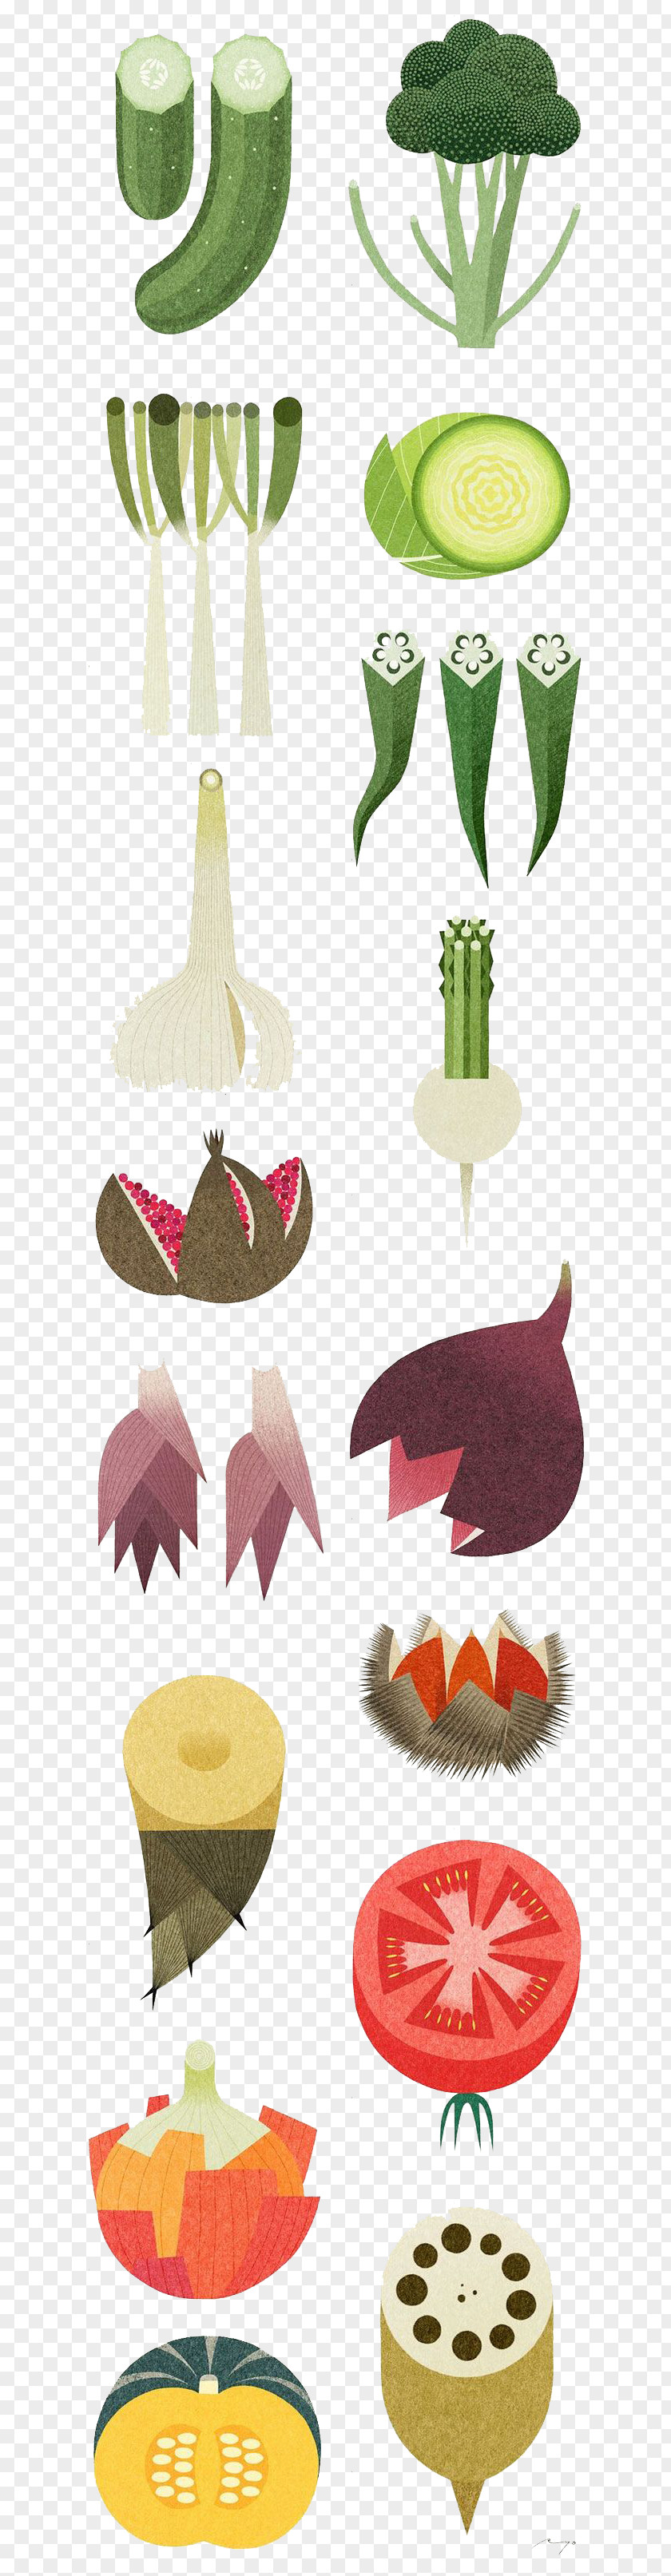 Vegetables Vegetable Food Illustrator Illustration PNG